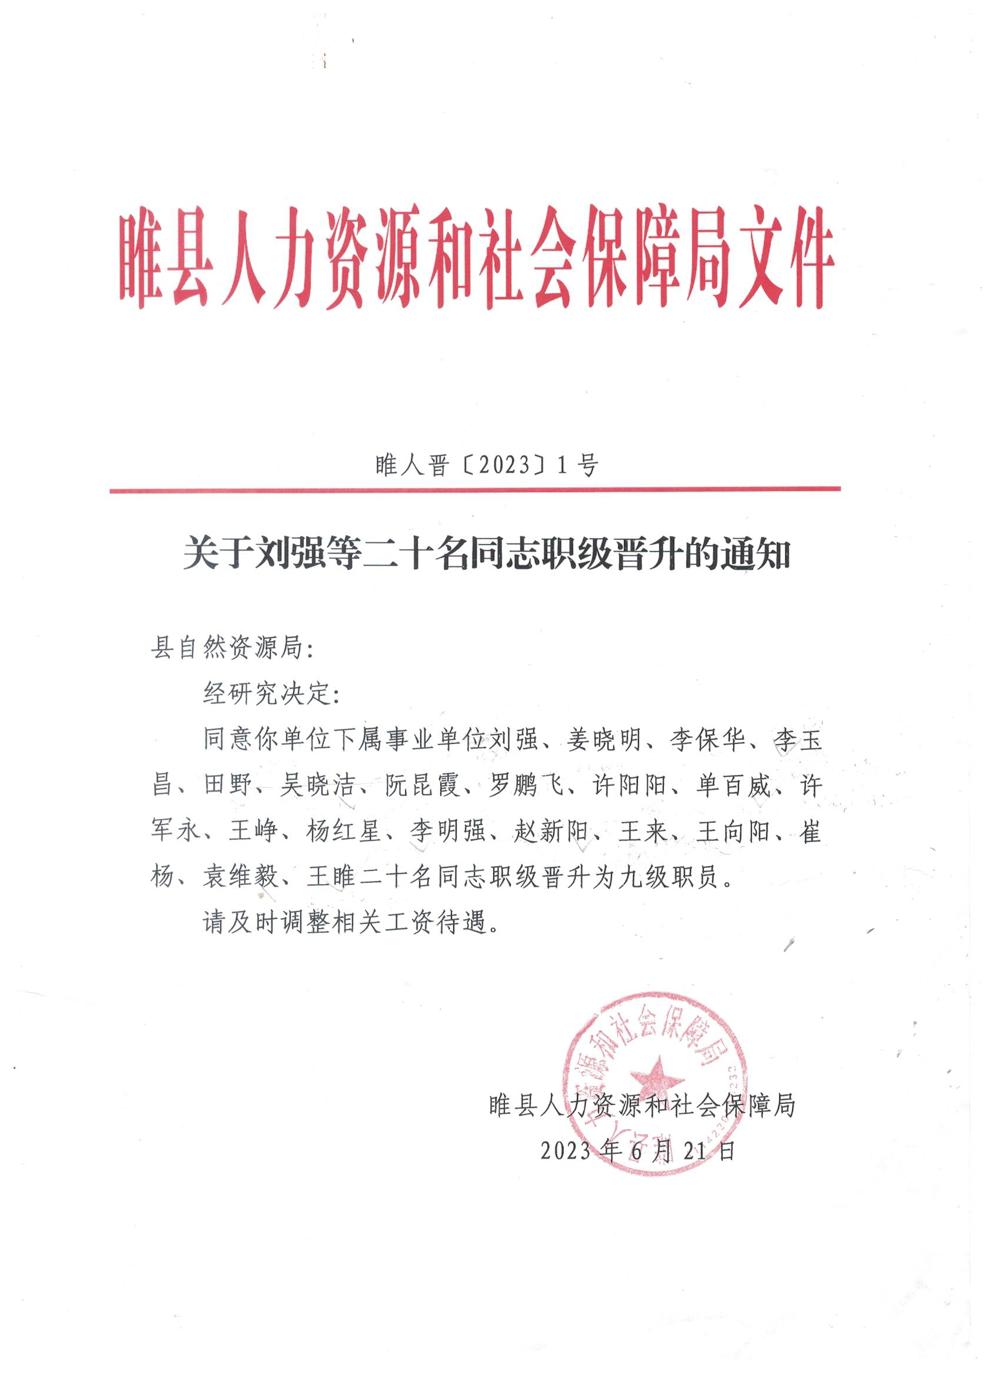 睢县自然资源局关于刘强等二十名同志职级晋升的通知